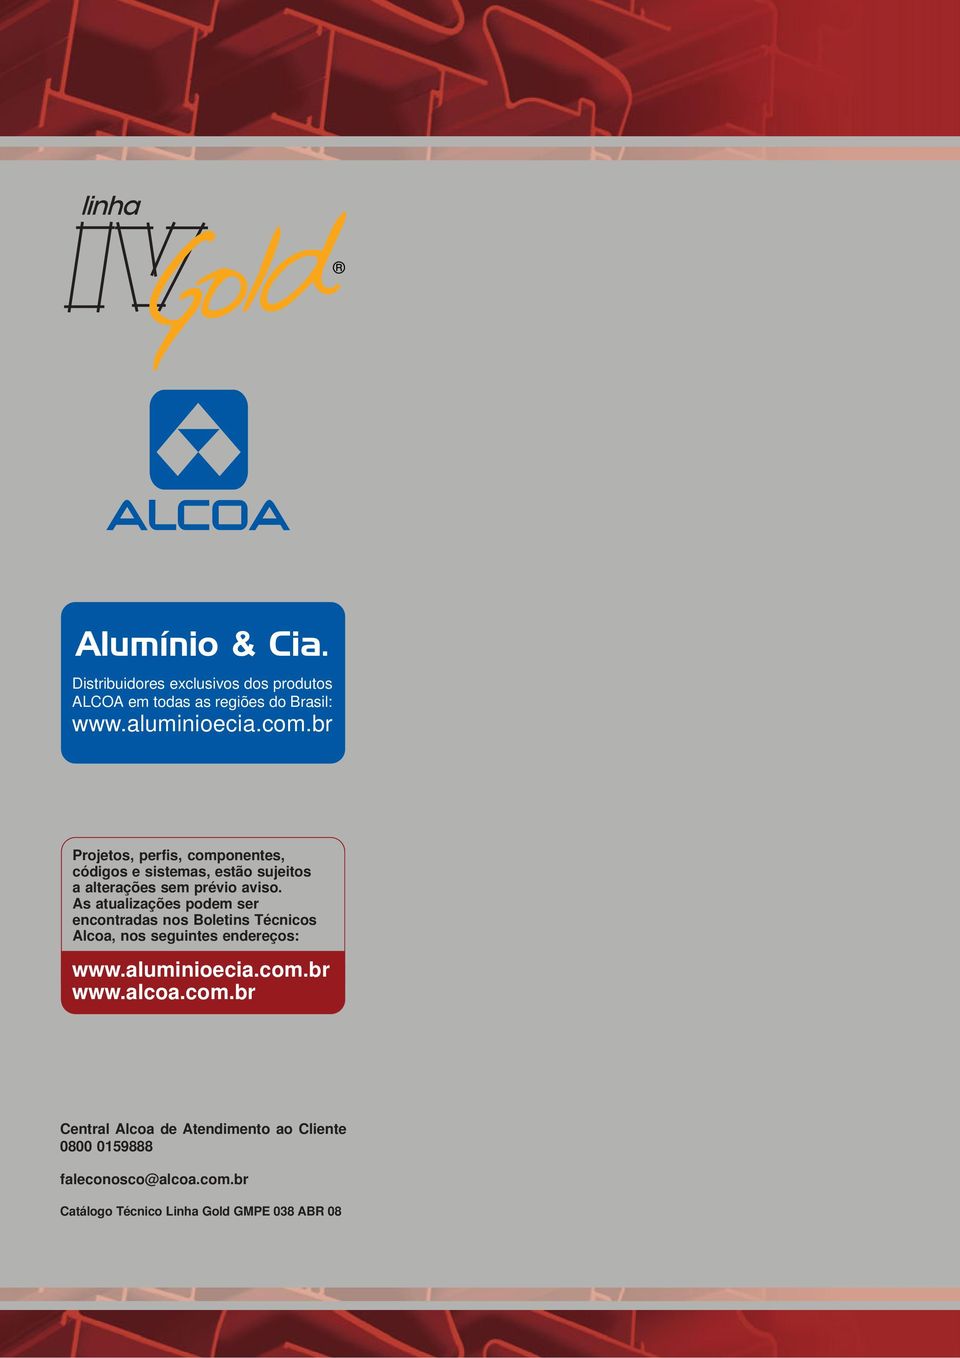 As atualizações podem ser encontradas nos Boletins Técnicos Alcoa, nos seguintes endereços: www.aluminioecia.com.